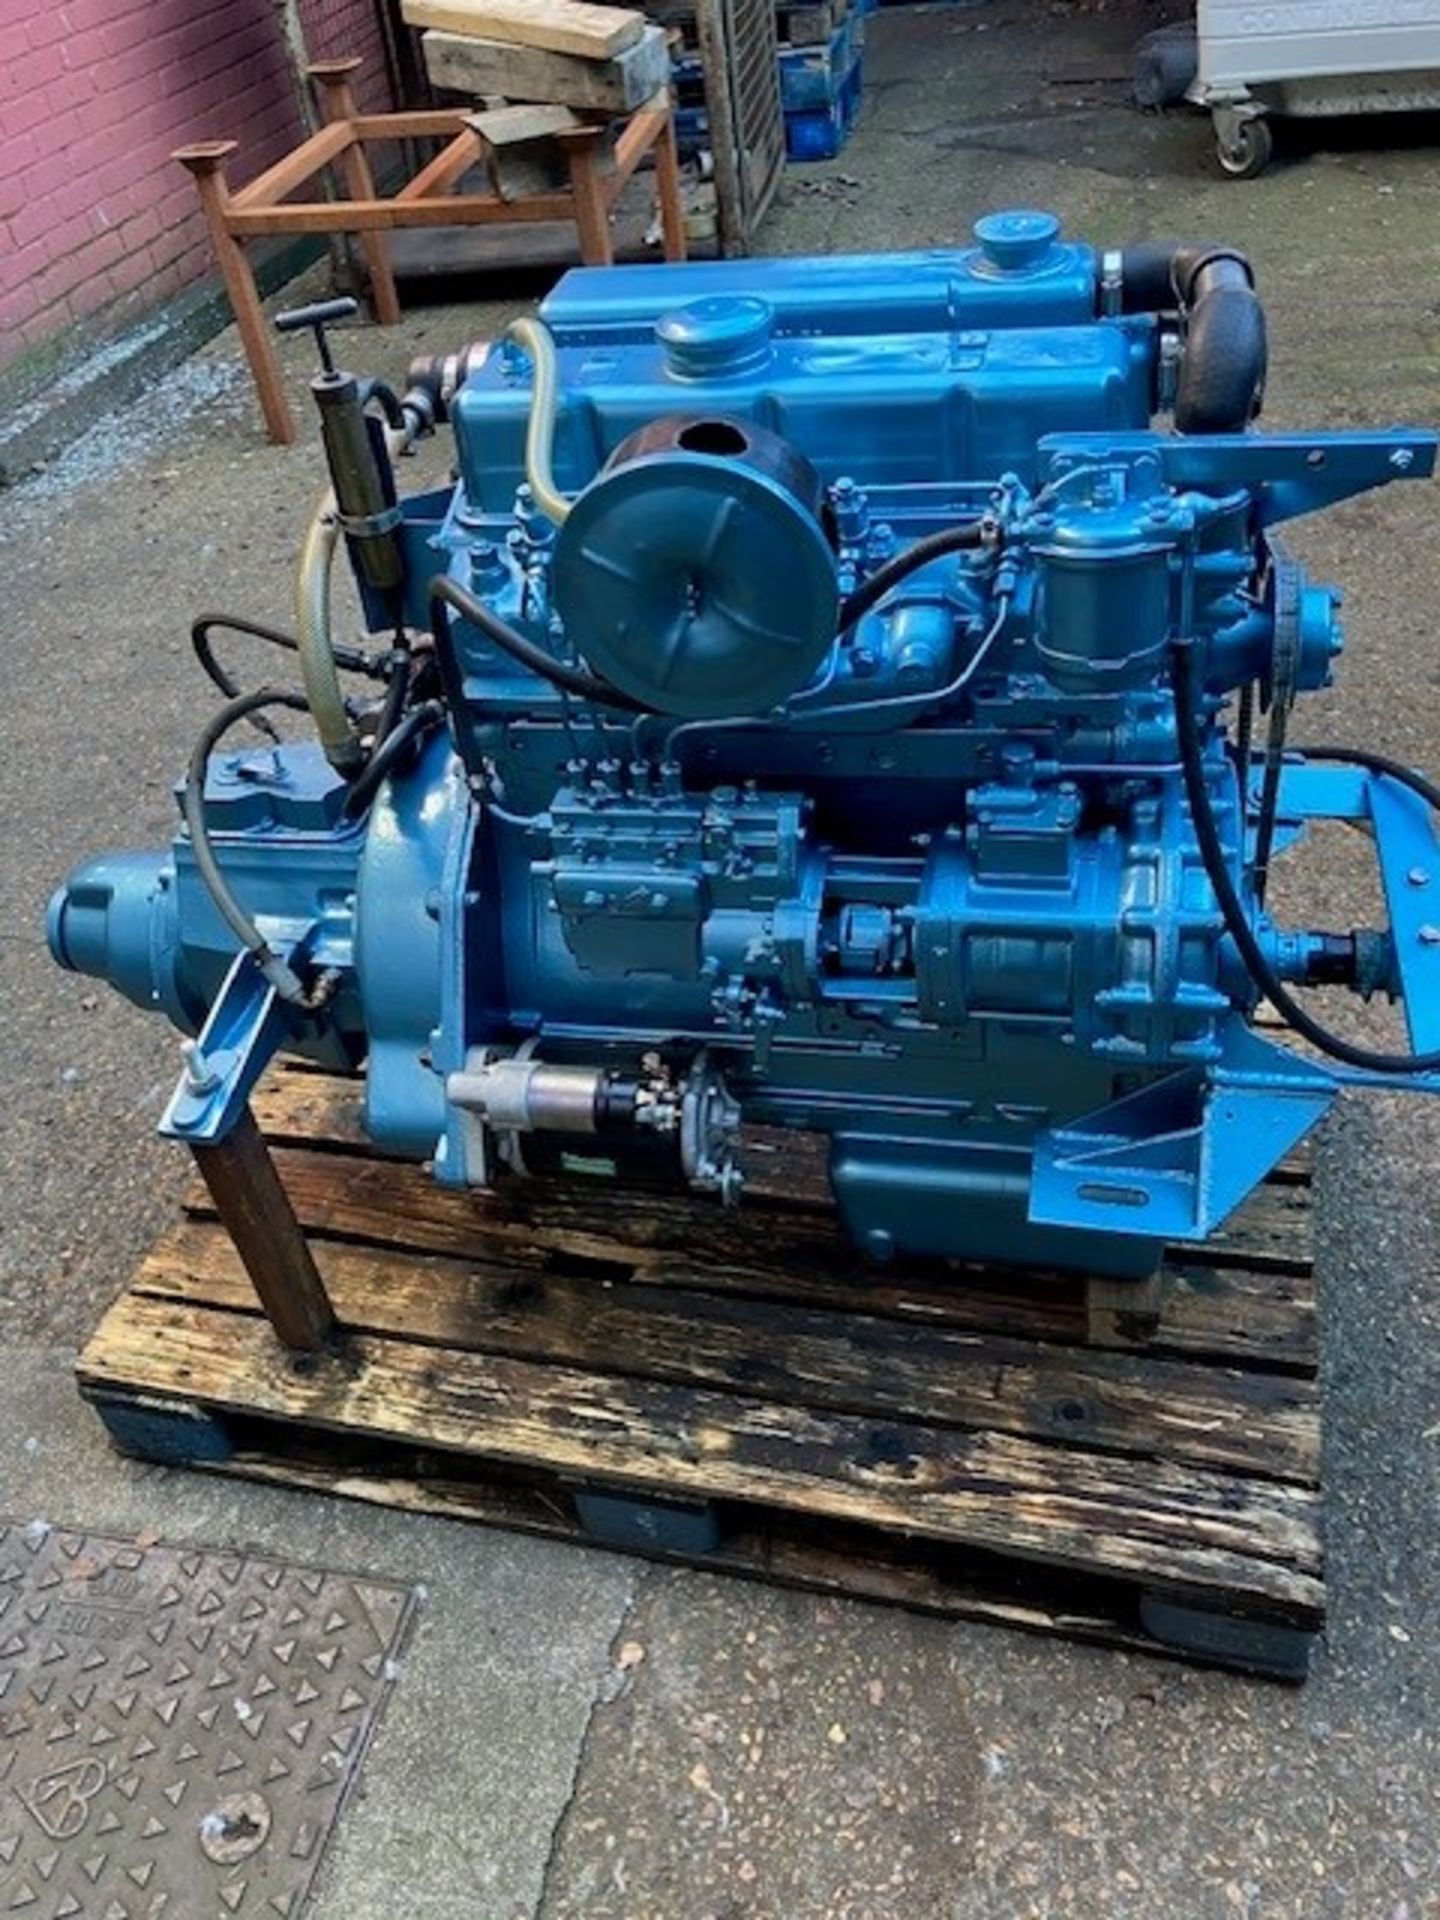 Leyland/ JCB 498 Marine Diesel engine c/w Gearbox - Image 2 of 9